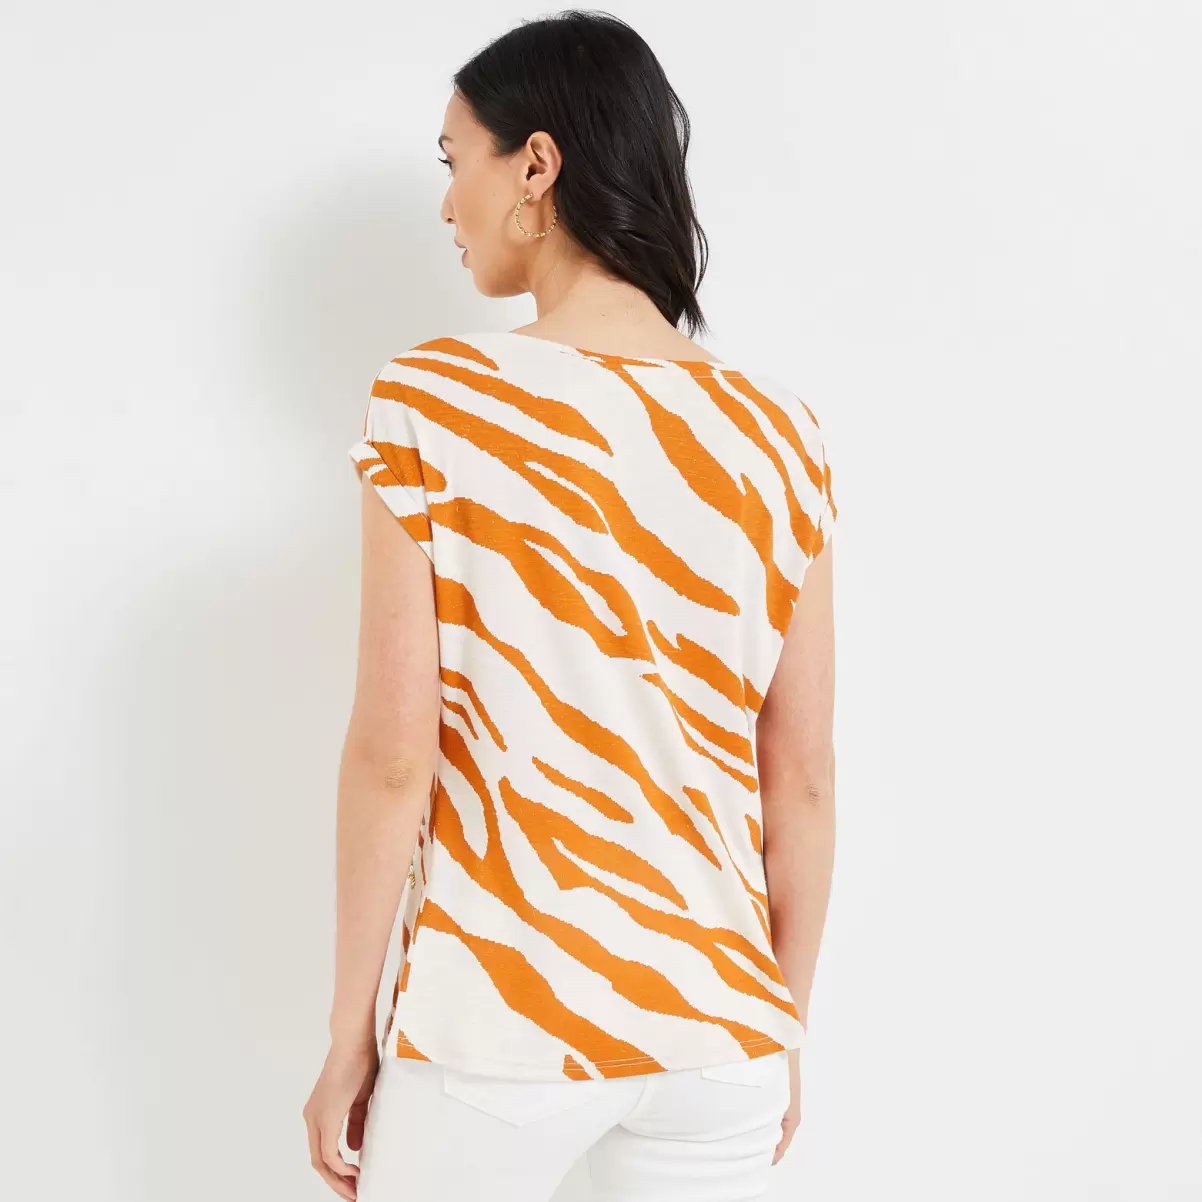 Grain De Malic Beige T-Shirts & Tops Femme Qualité Supérieure Tshirt Imprimé Femme - 1